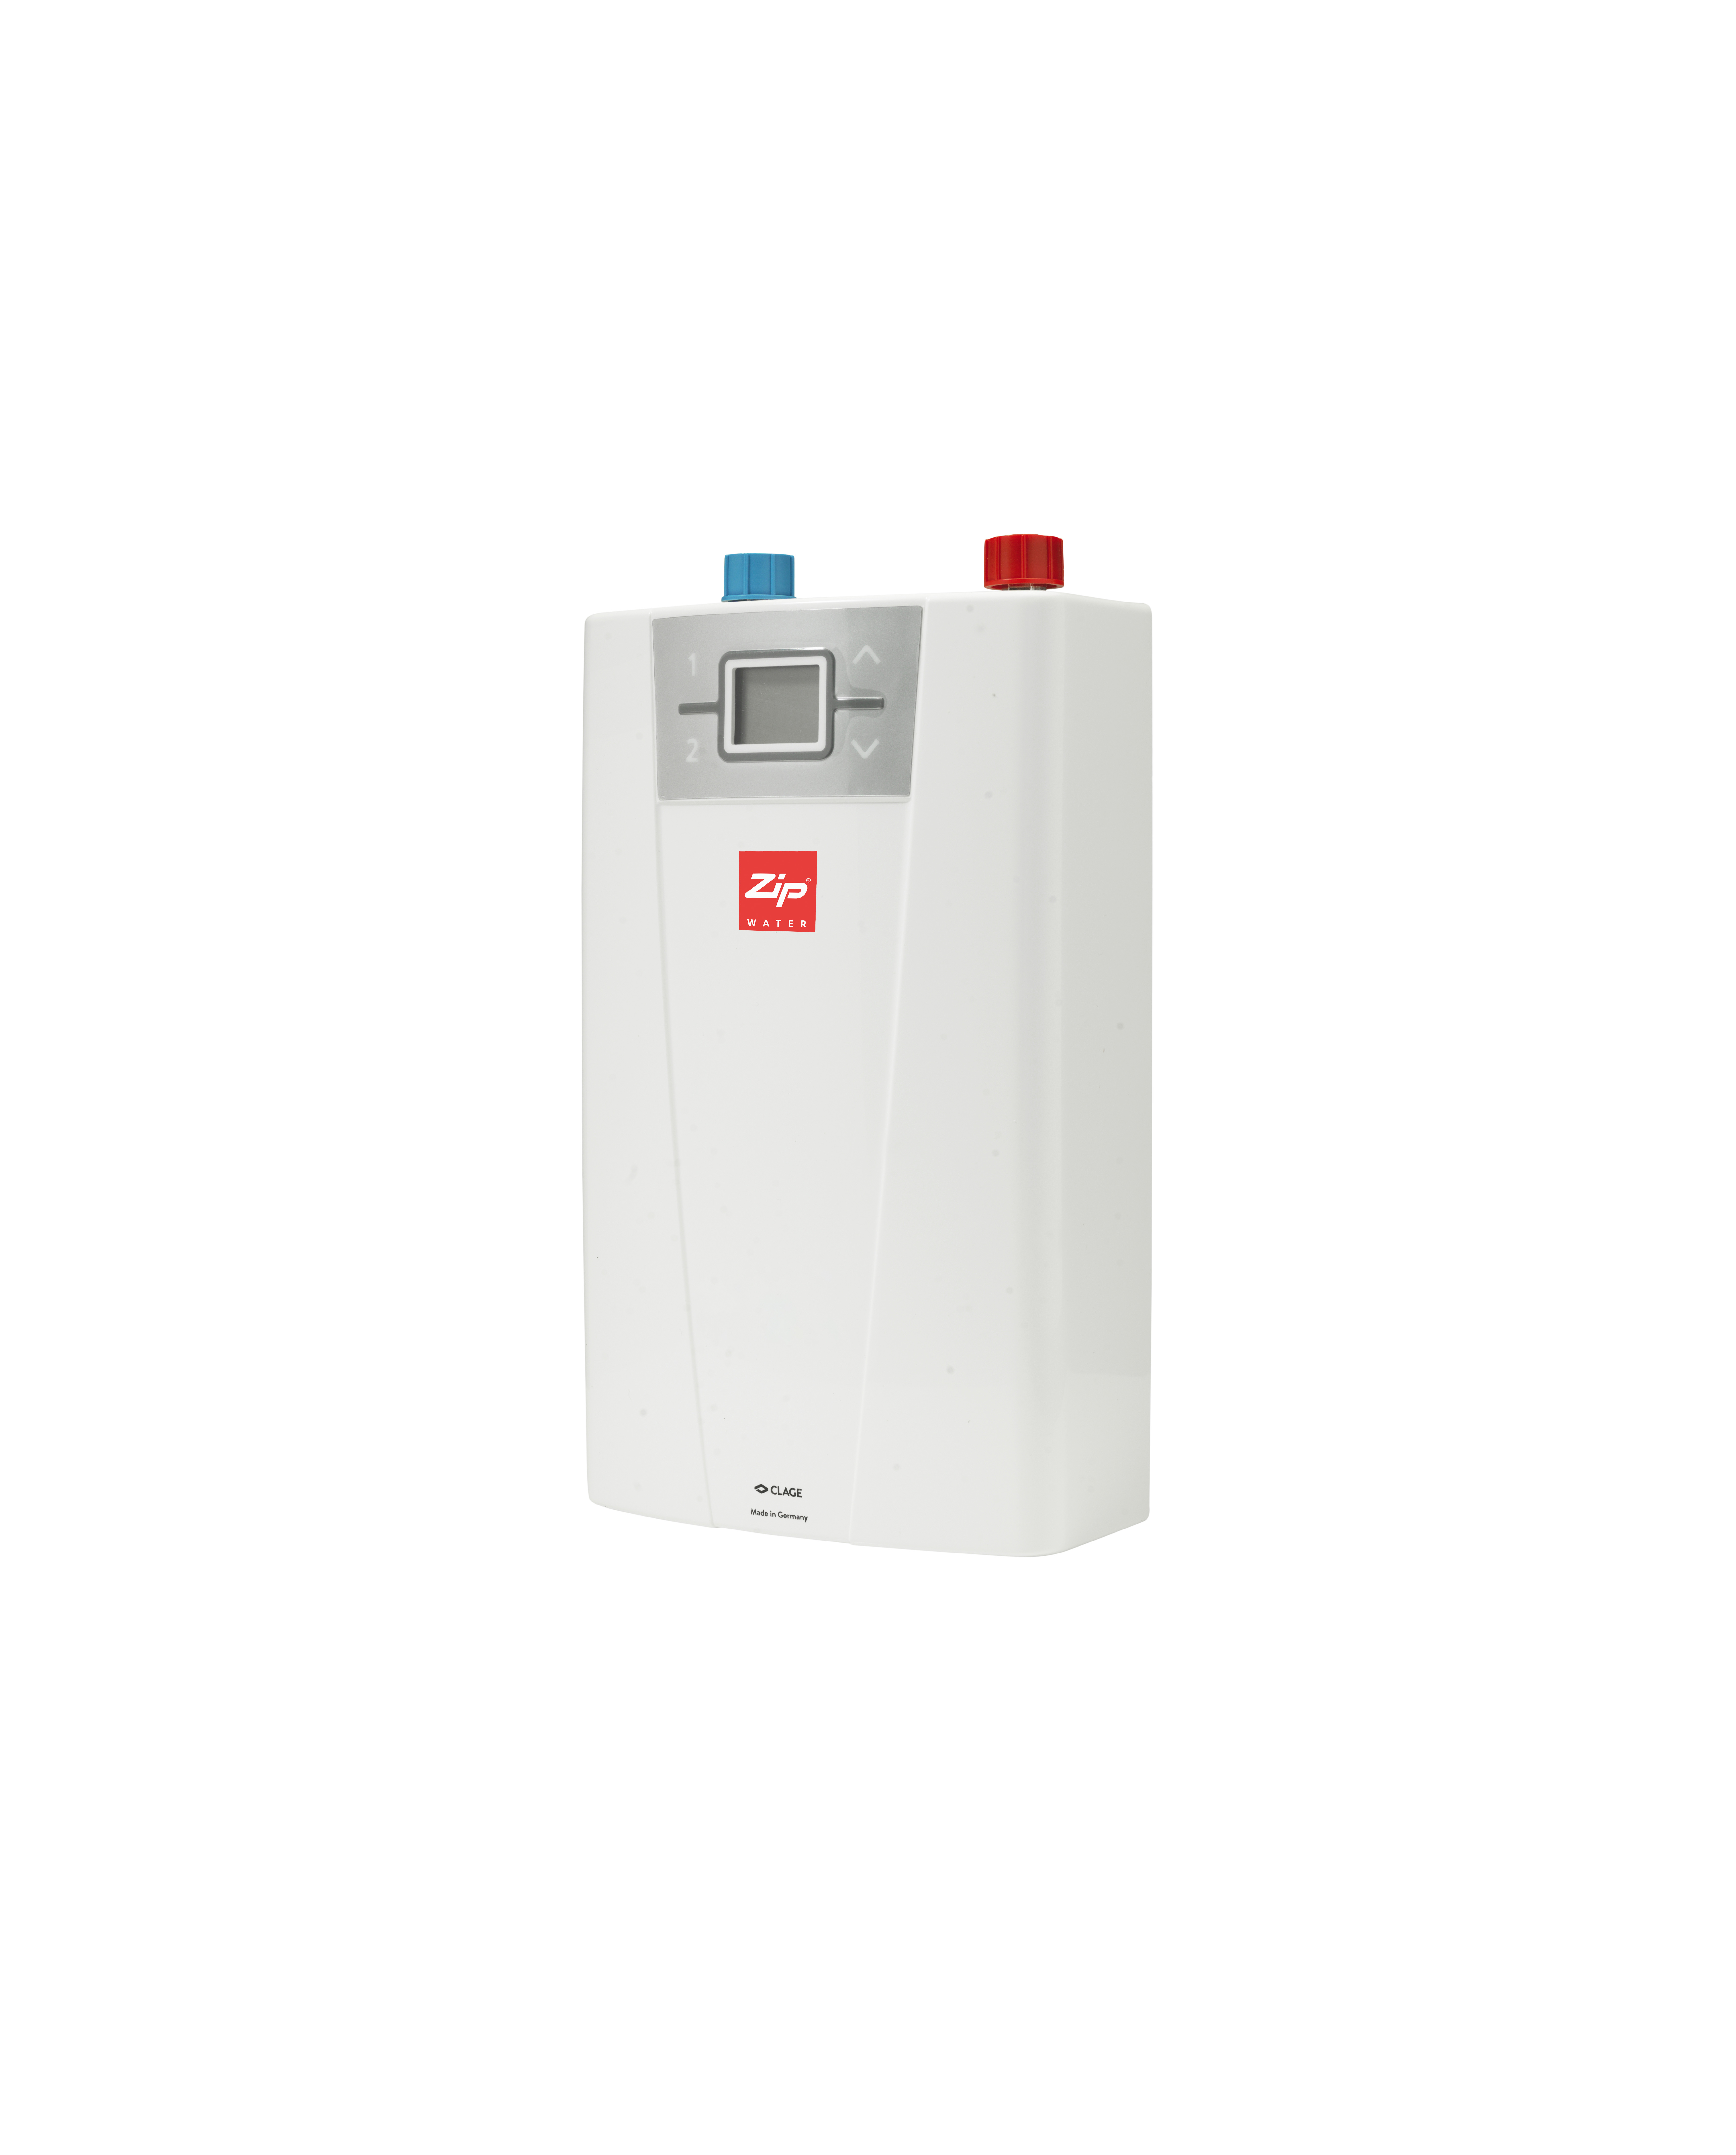 Zip InLine CEX Water Heater